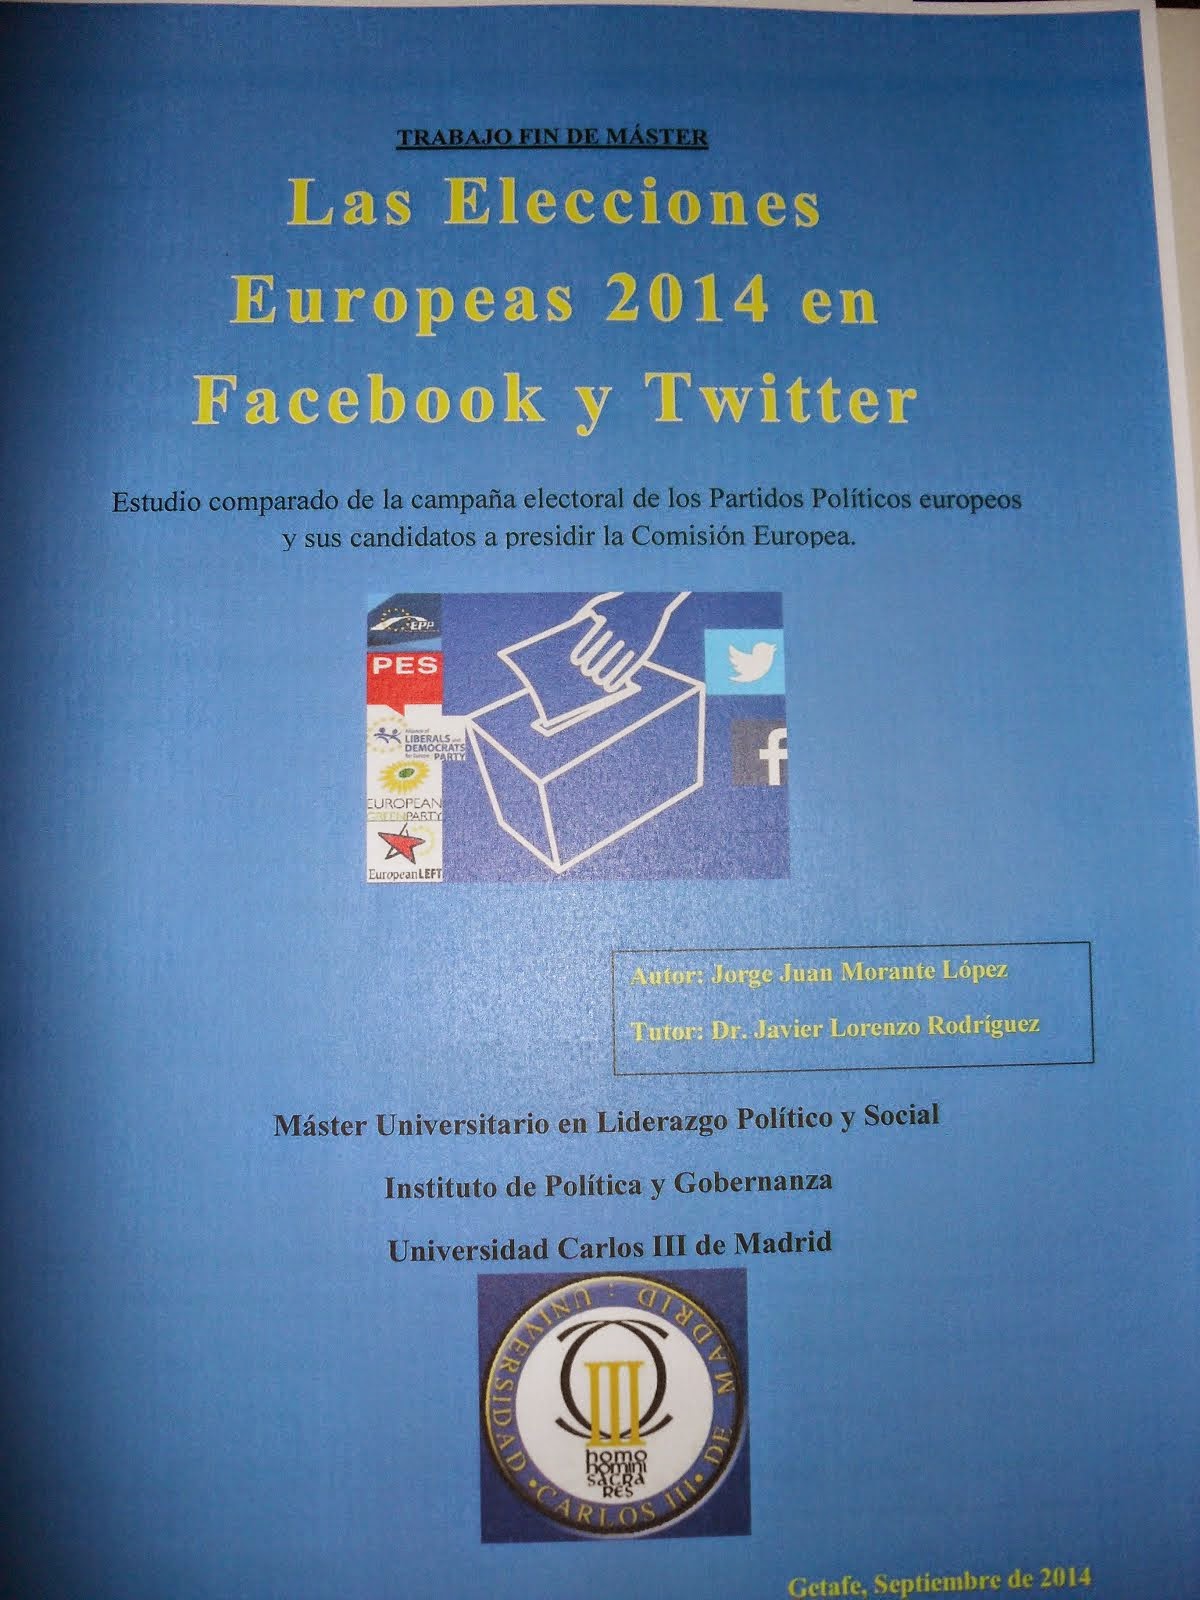 Las Elecciones Europeas 2014 en Facebook y Twitter